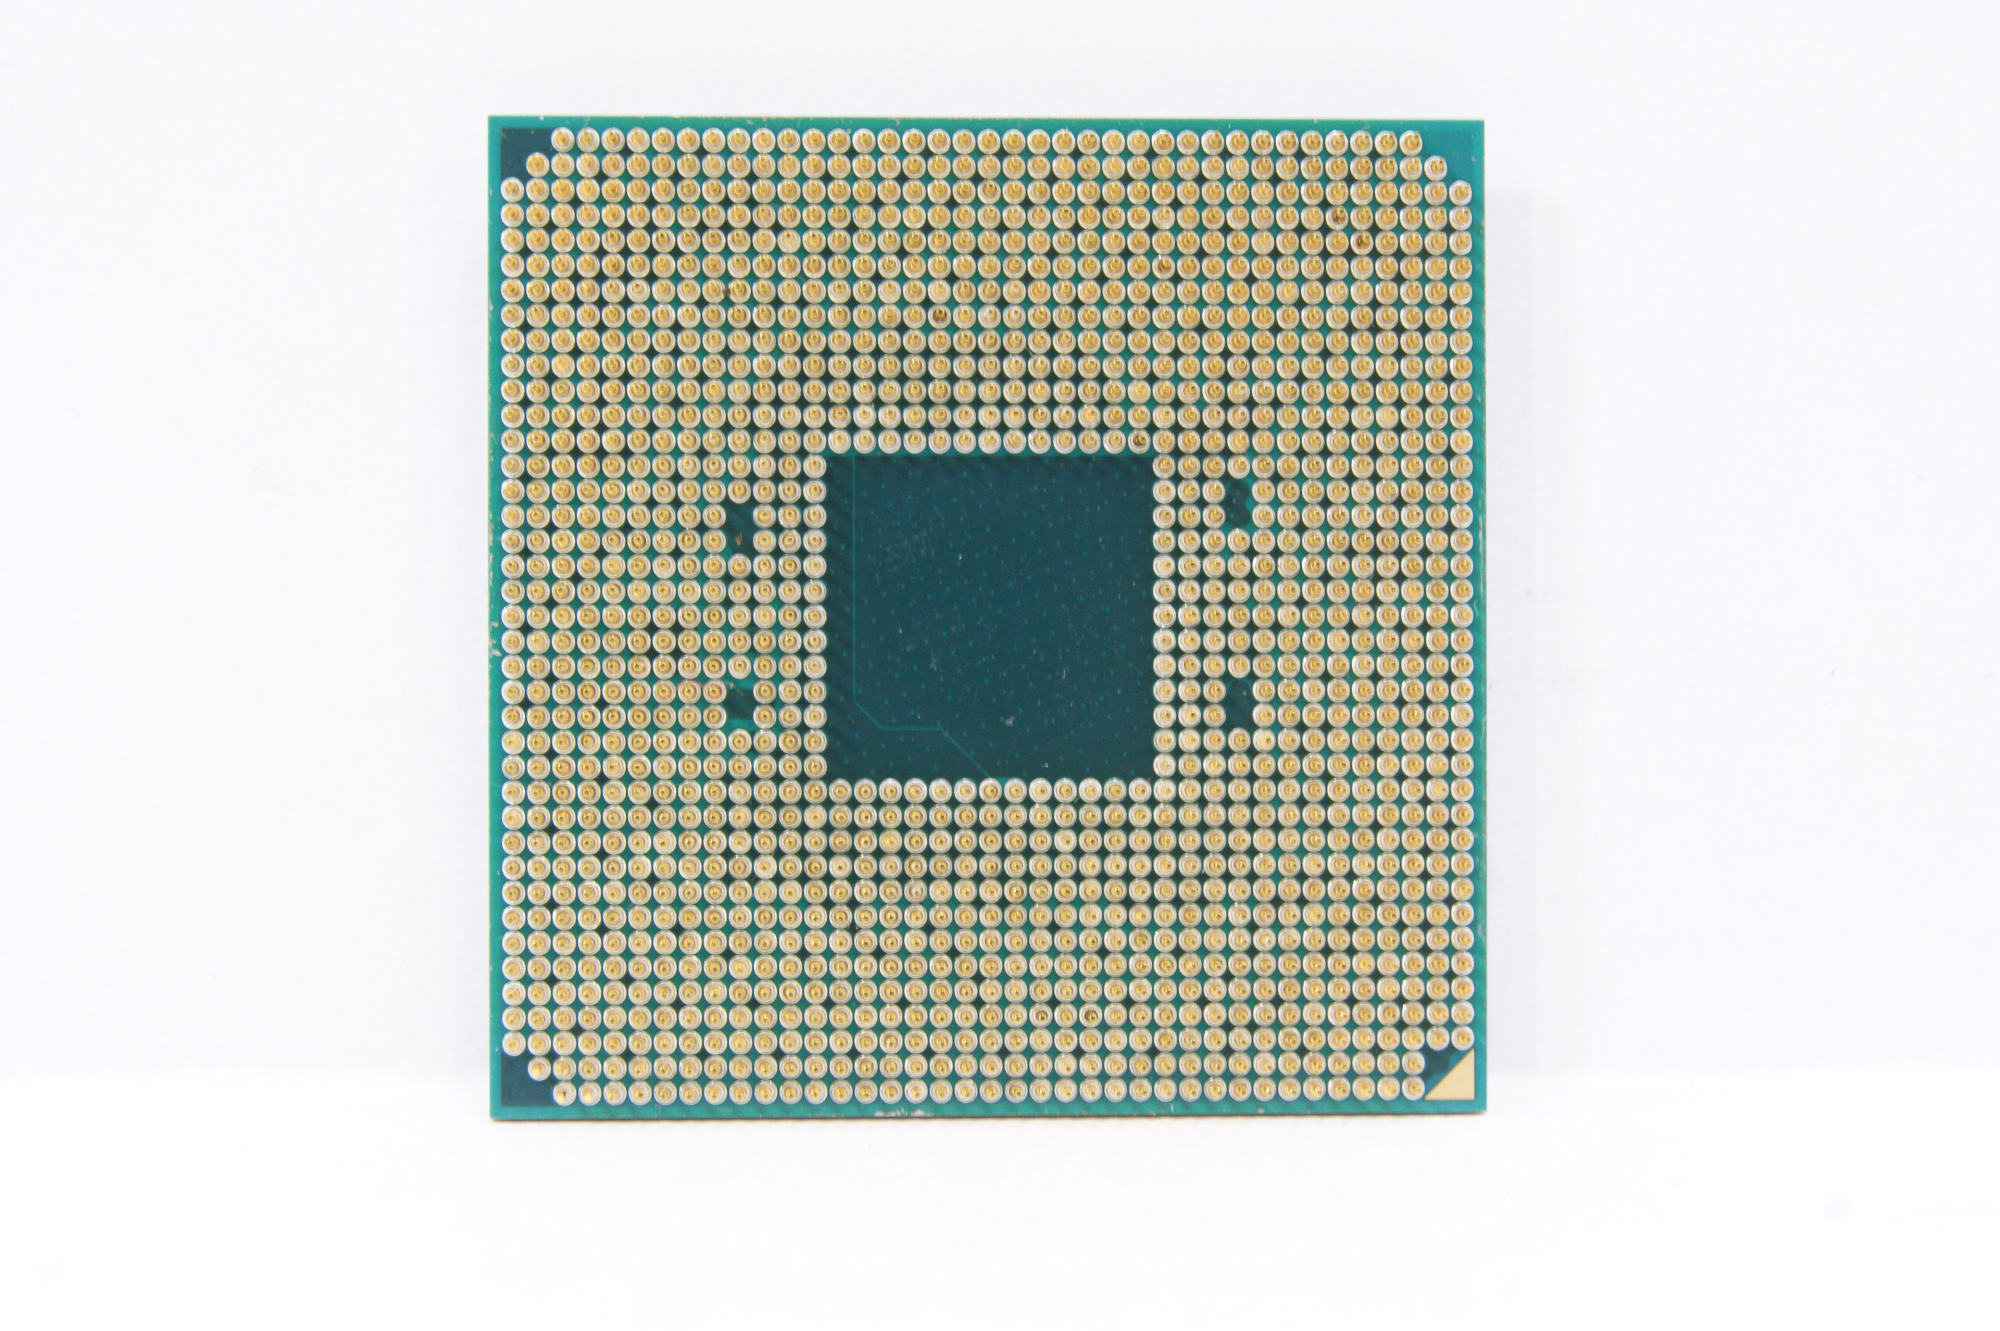 Райзен какой сокет. Процессор AMD Ryzen 5 2400g. Am4 сокет. AMD am4 процессоры. Процессор AMD Ryzen 5 Pro 2400g.